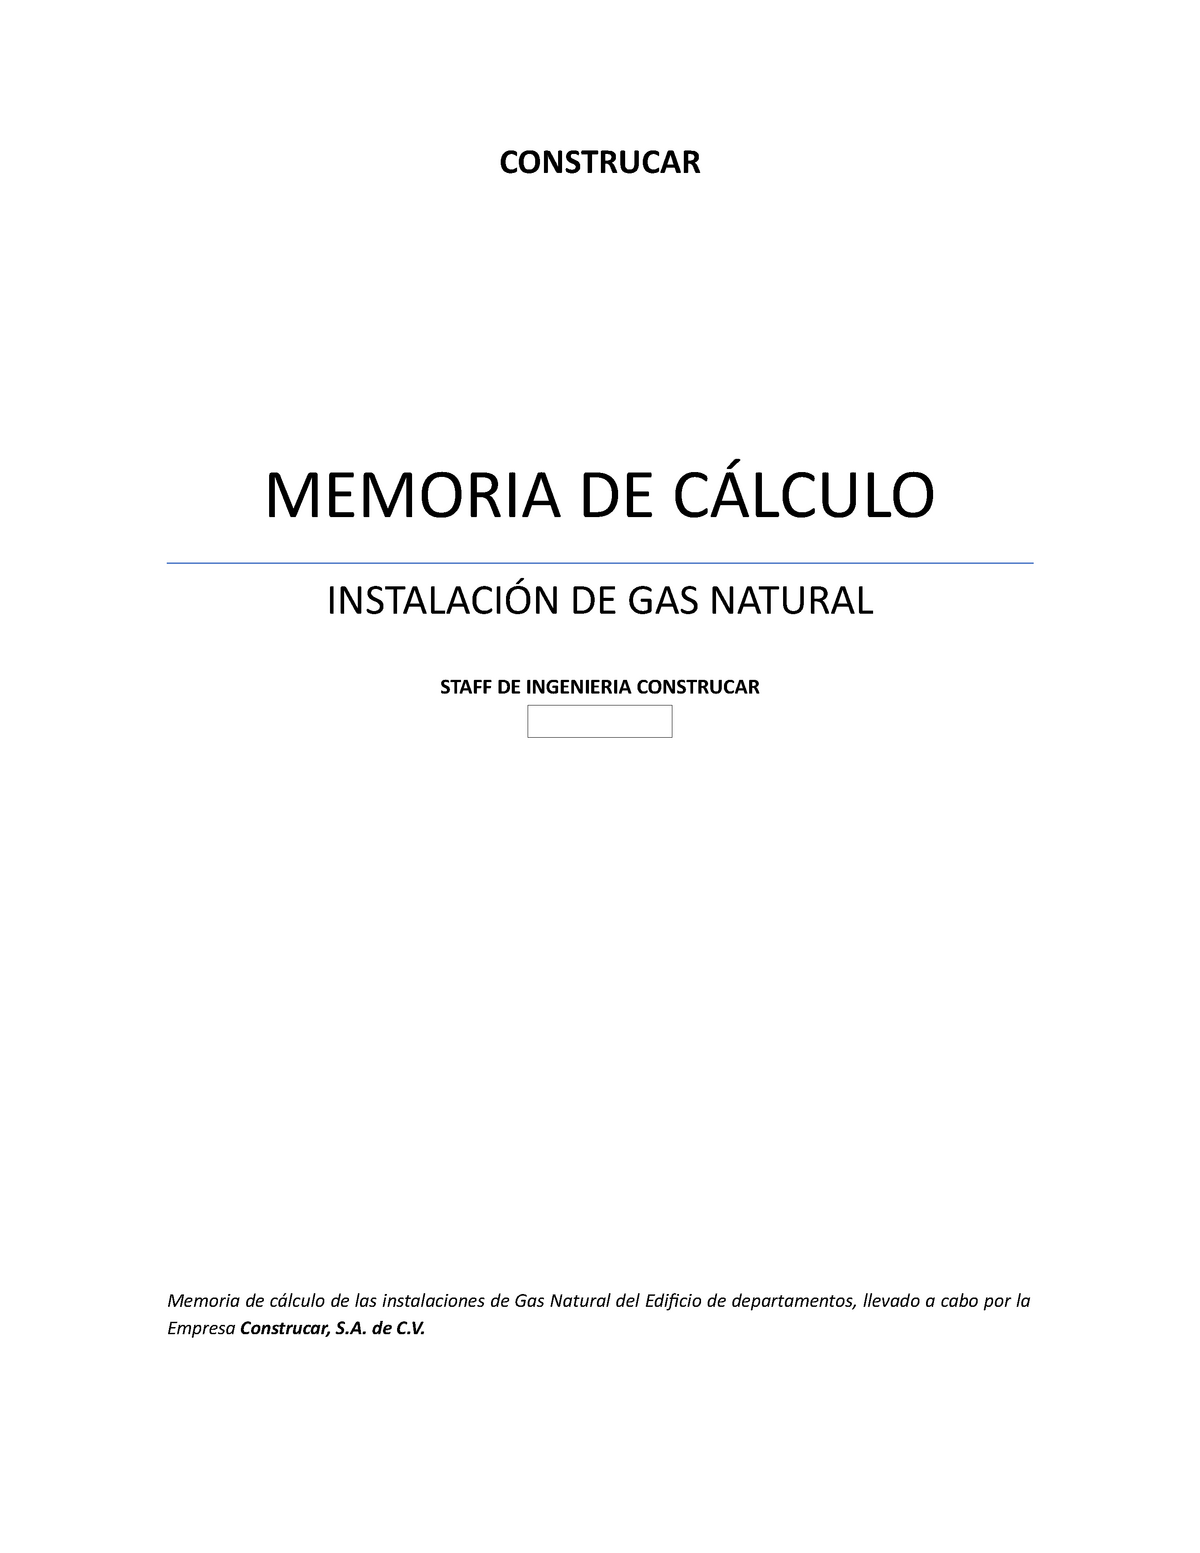 cebra cinta Bigote Memoria de Instalación de Gas Natural - CONSTRUCAR MEMORIA DE CÁLCULO  INSTALACIÓN DE GAS NATURAL - Studocu